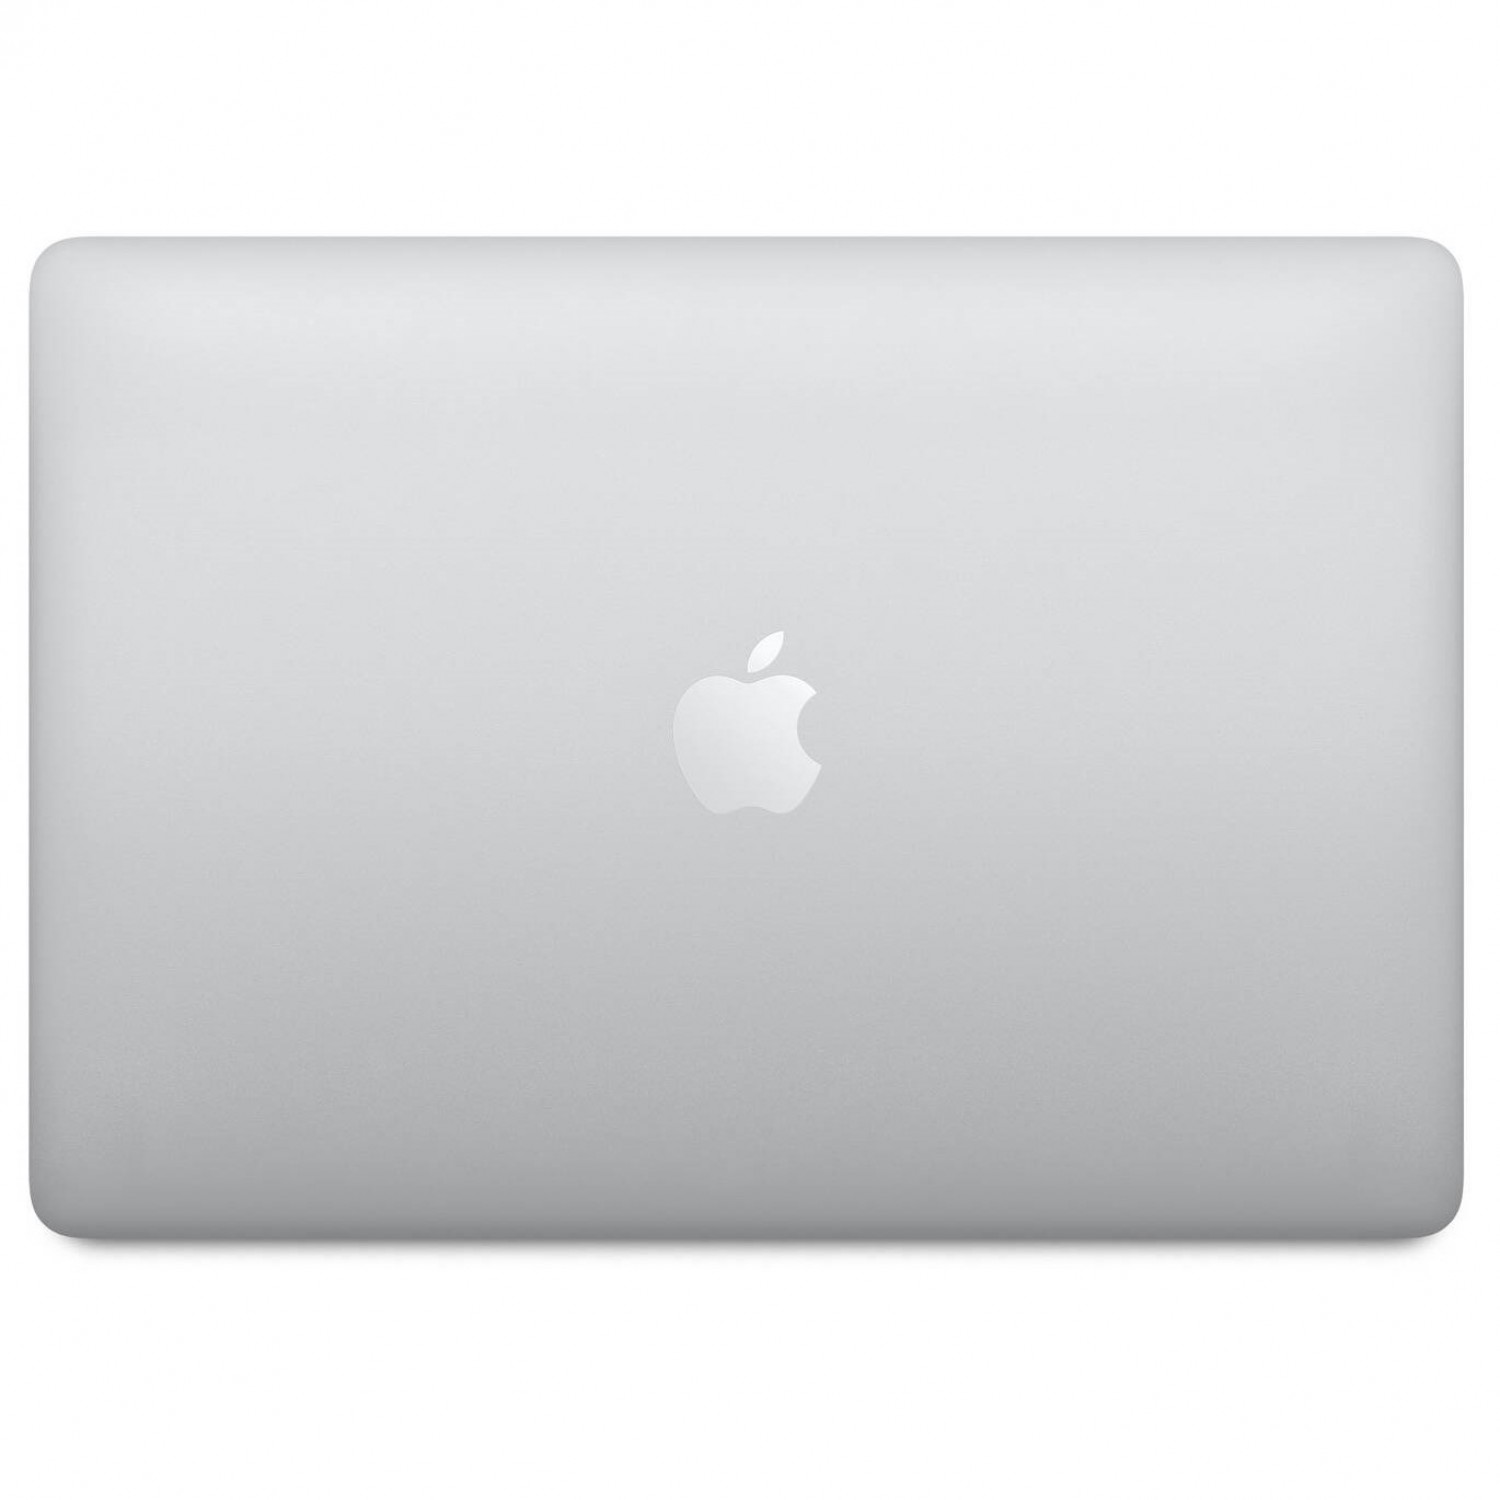 لپ تاپ Apple MacBook Pro 13 2020 CTO - Silver - E-5